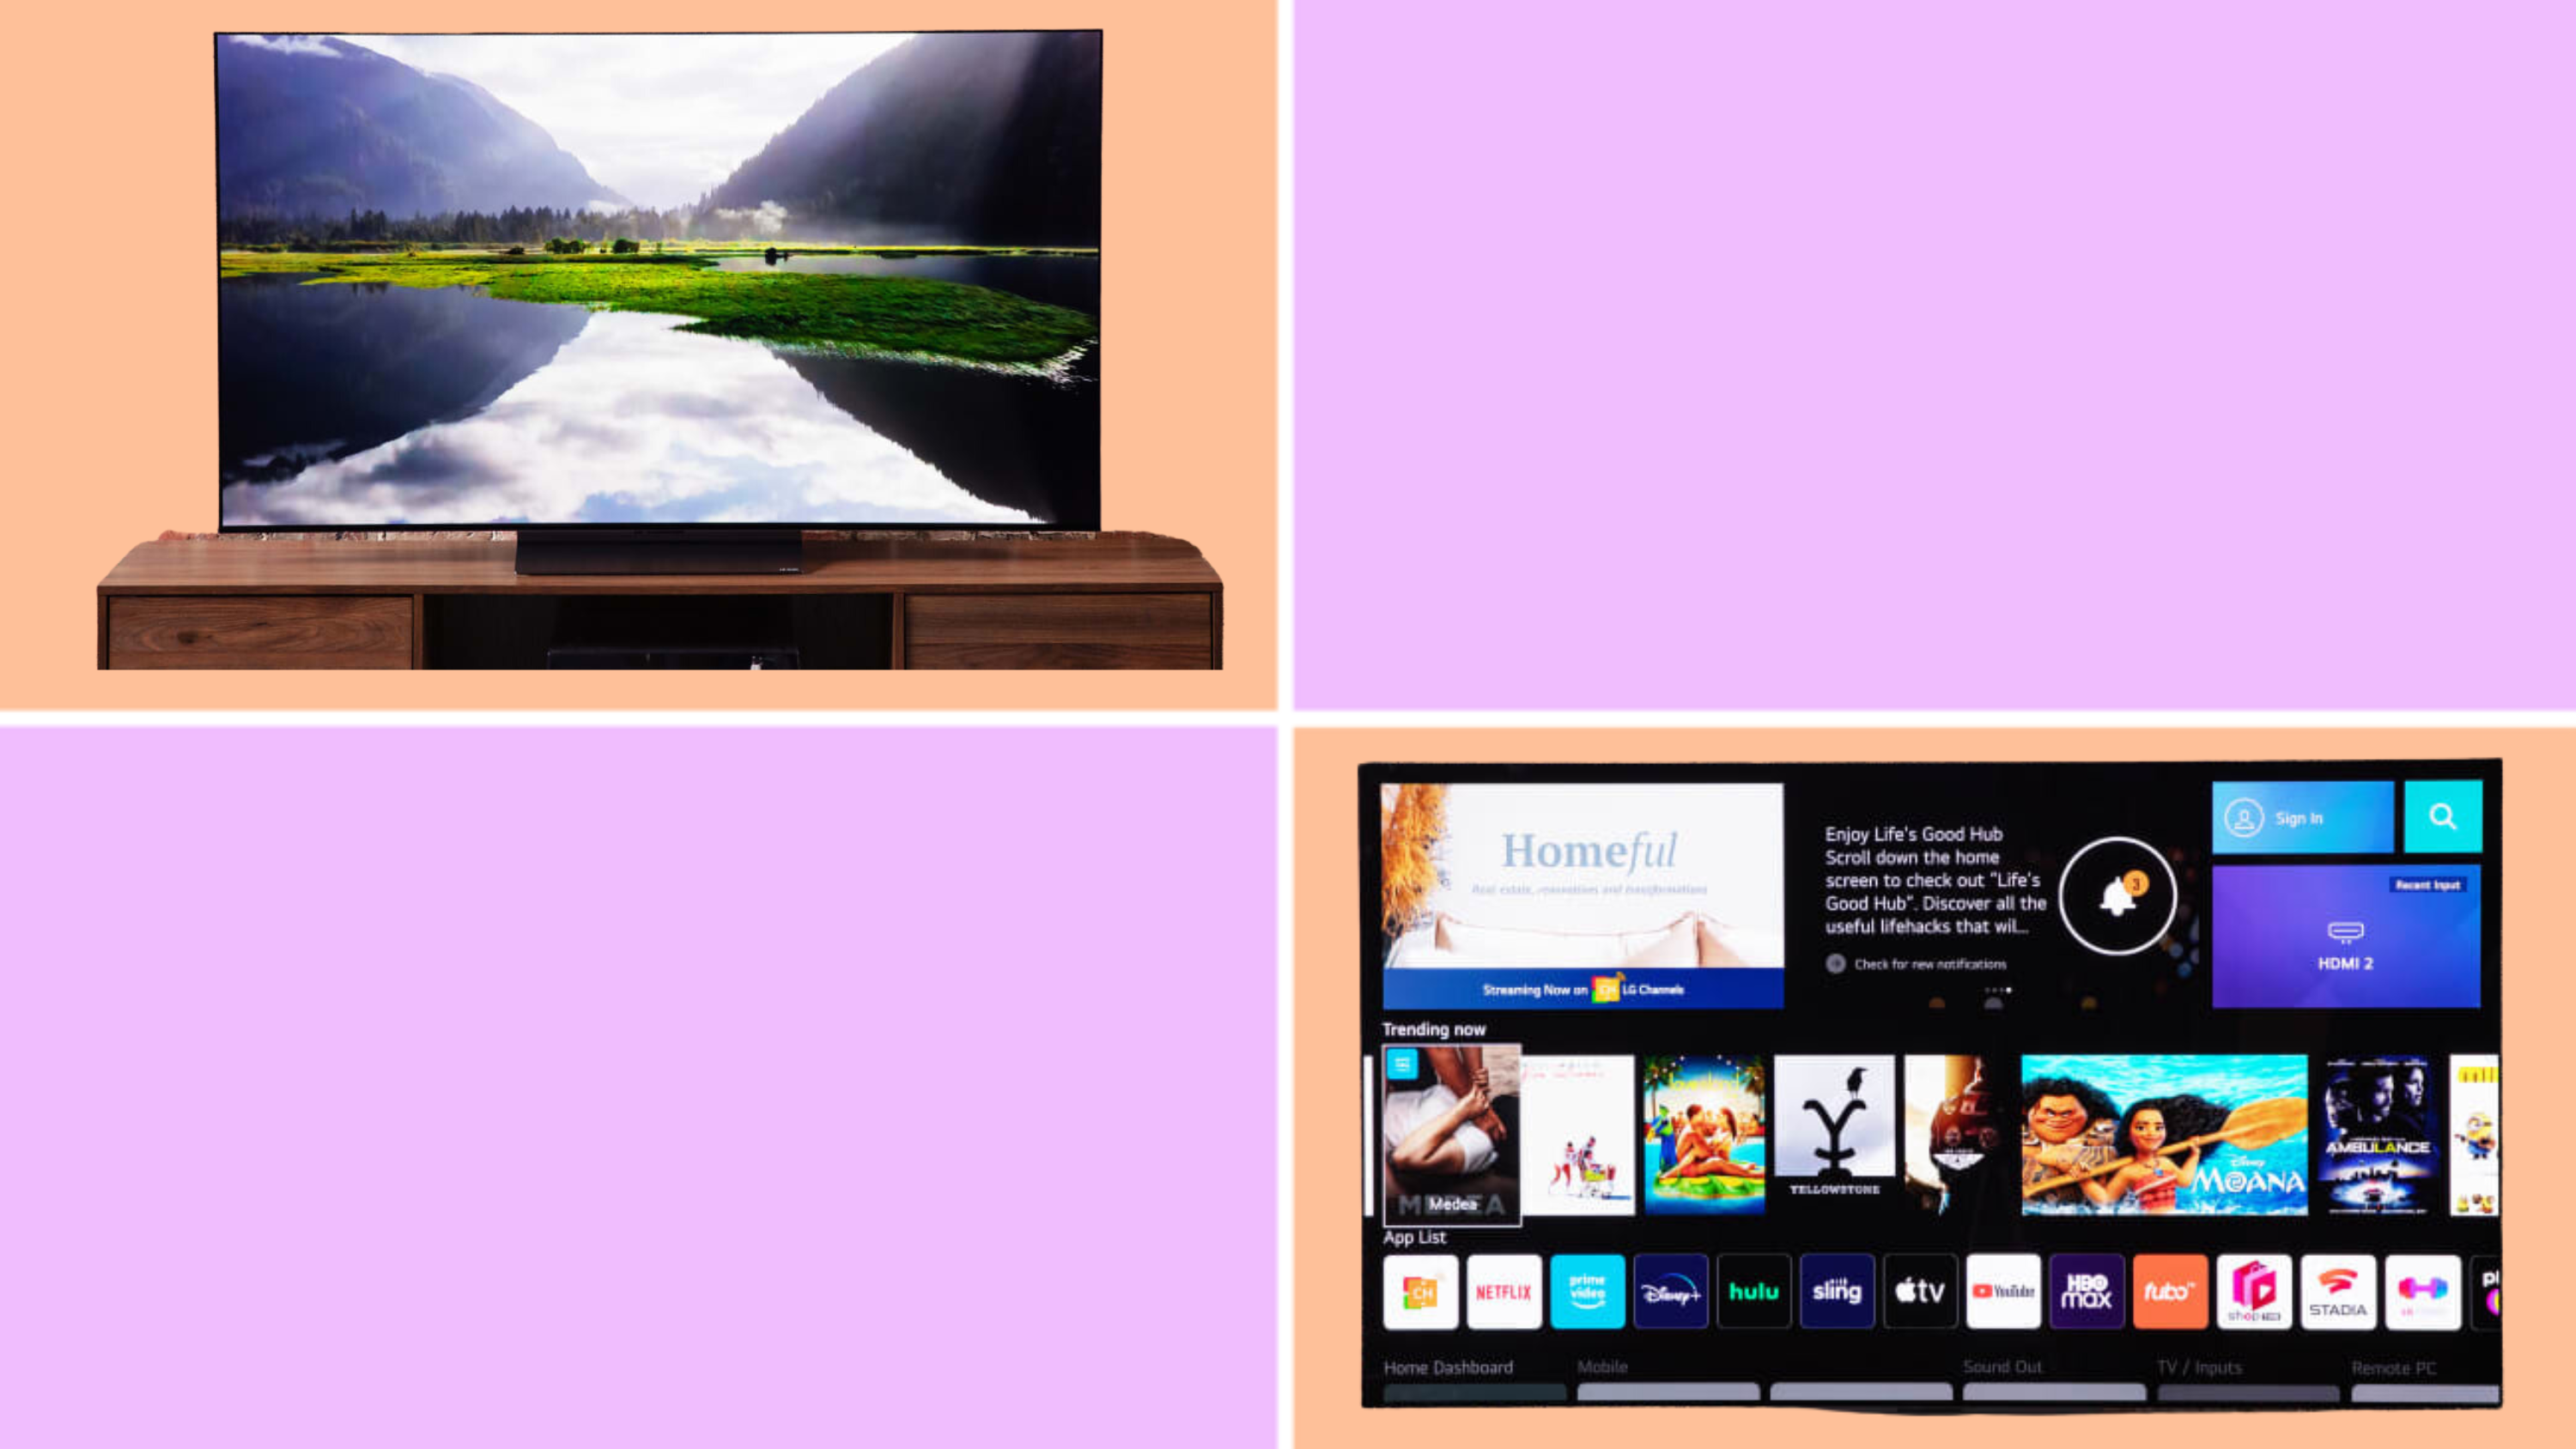 ทีวี LG C3 OLED ถัดจากทีวี LG G2 OLED บนพื้นหลังสีส้มและสีม่วง